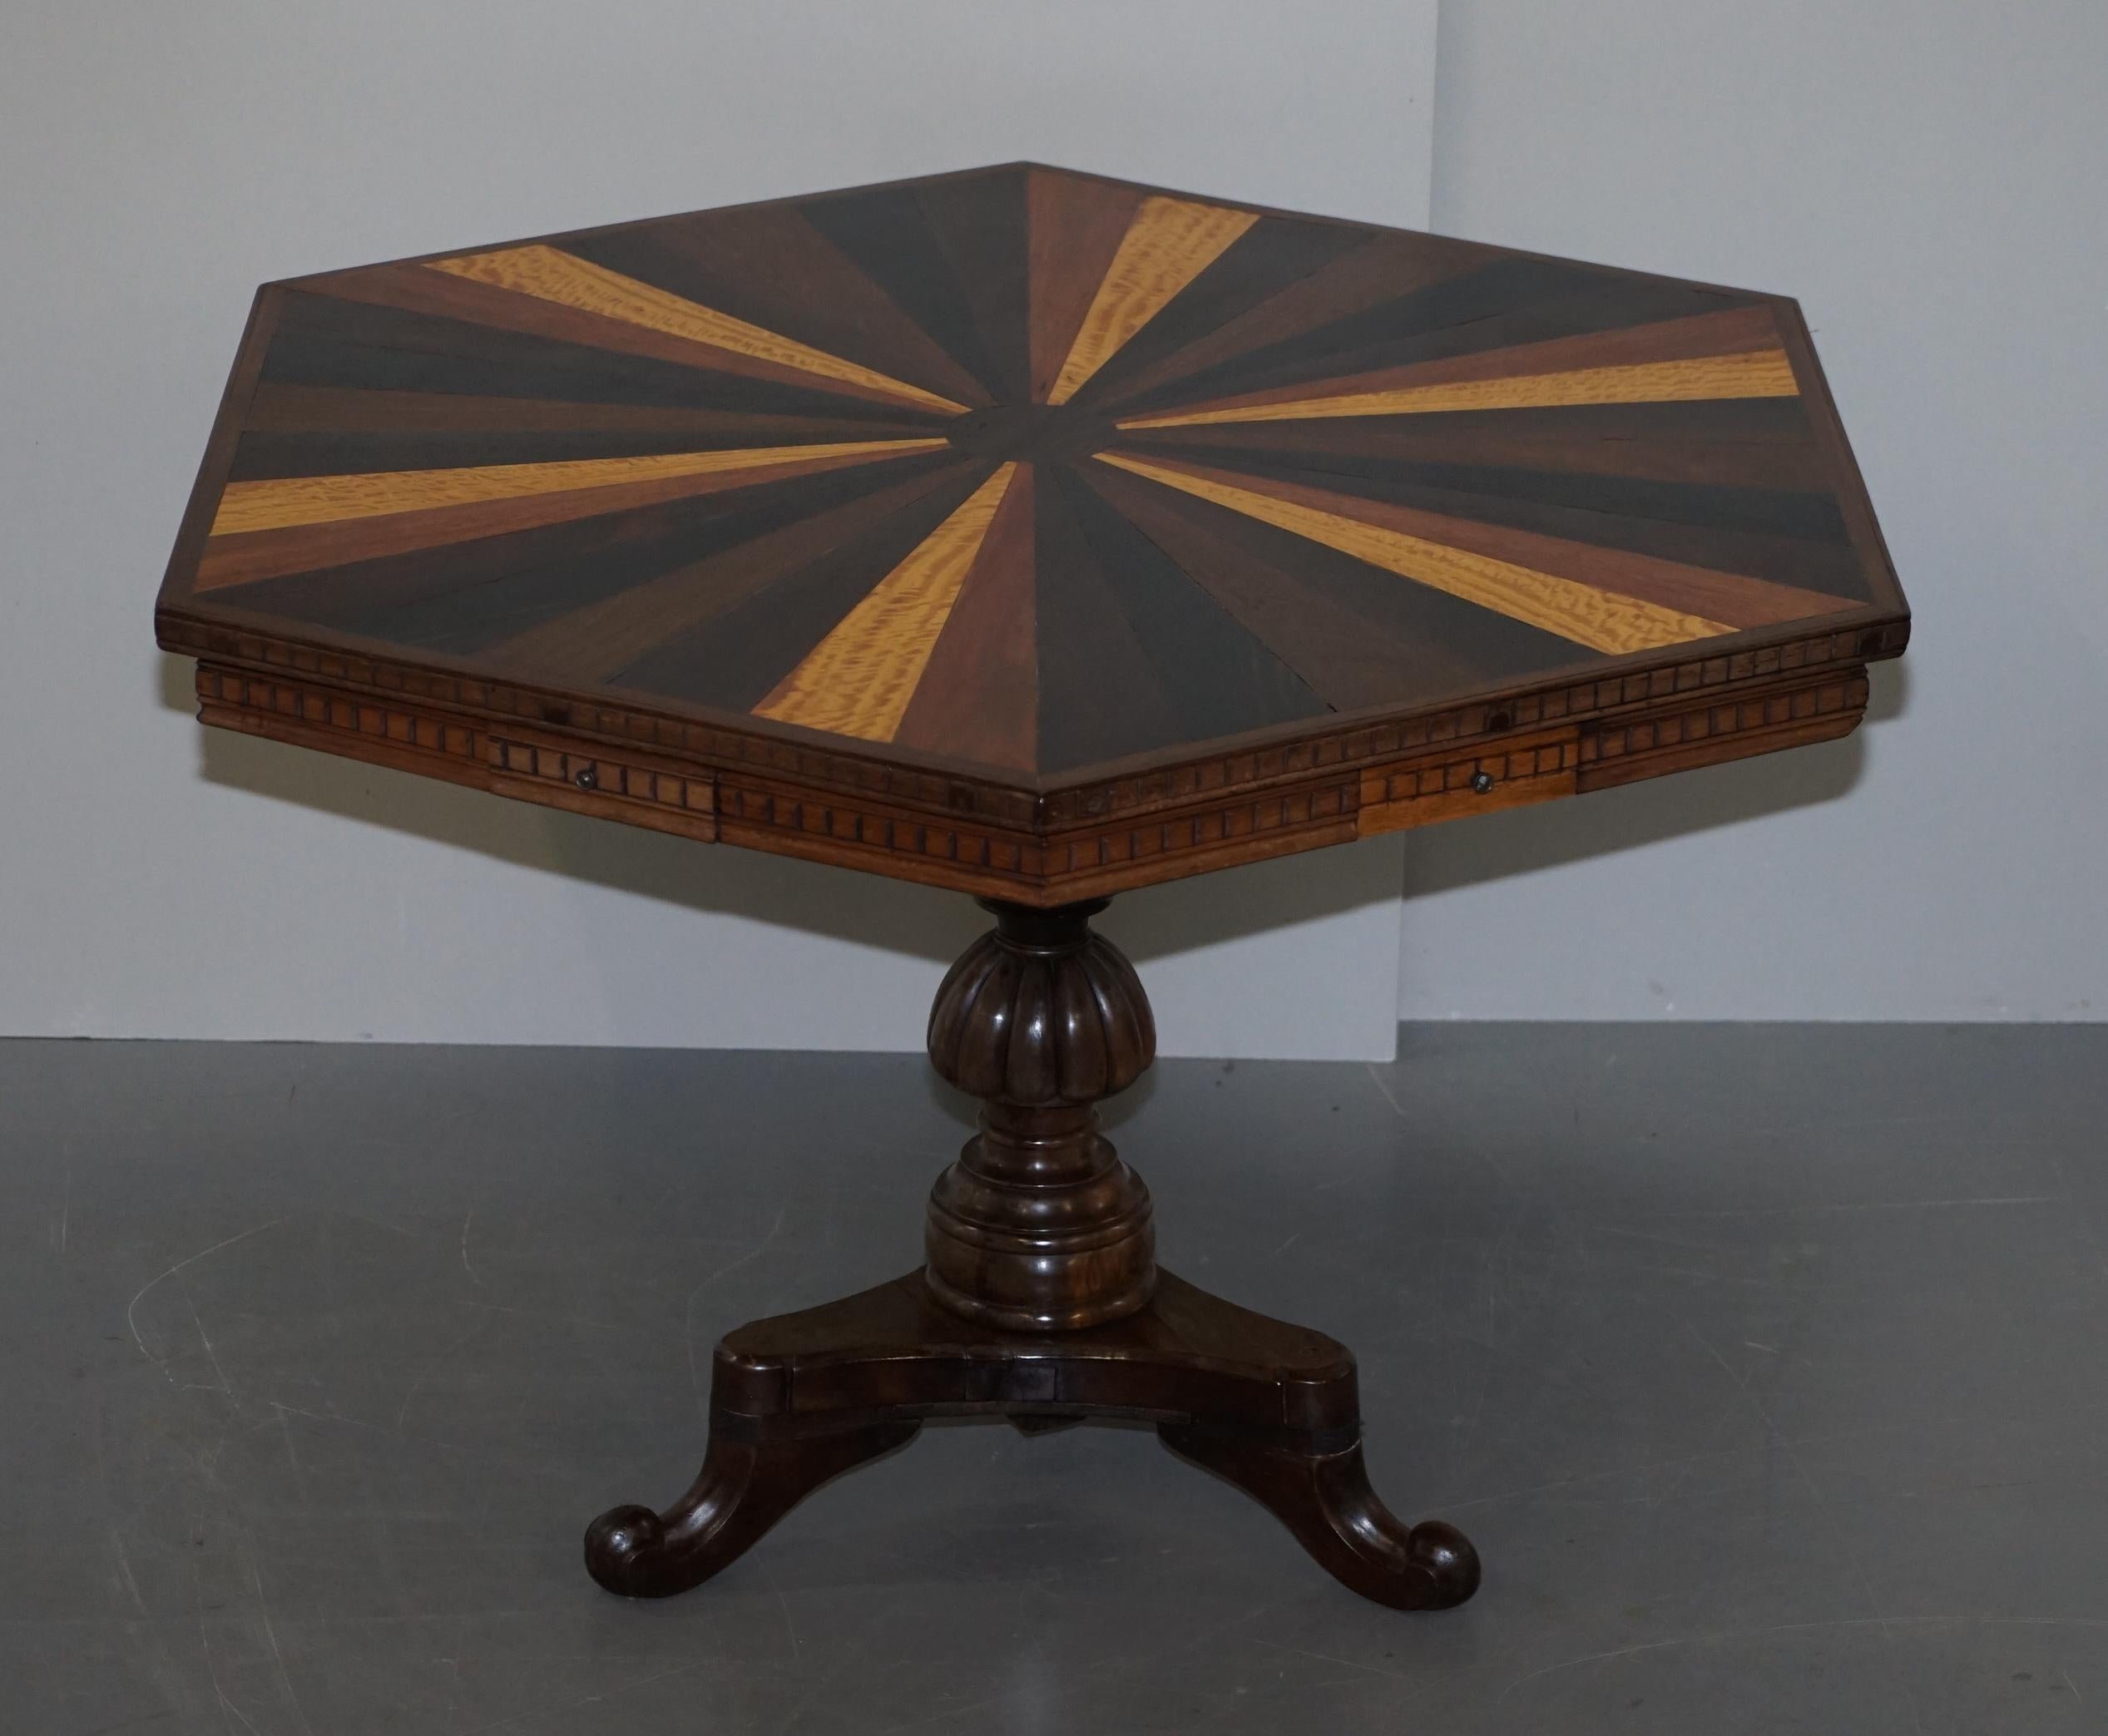 Nous sommes ravis d'offrir à la vente cette table centrale d'appoint en bois de spécimen anglo-indien absolument magnifique

Une très belle et rare table, très probablement du district de Galle au Sri Lanka au milieu du 19ème siècle. La pièce est